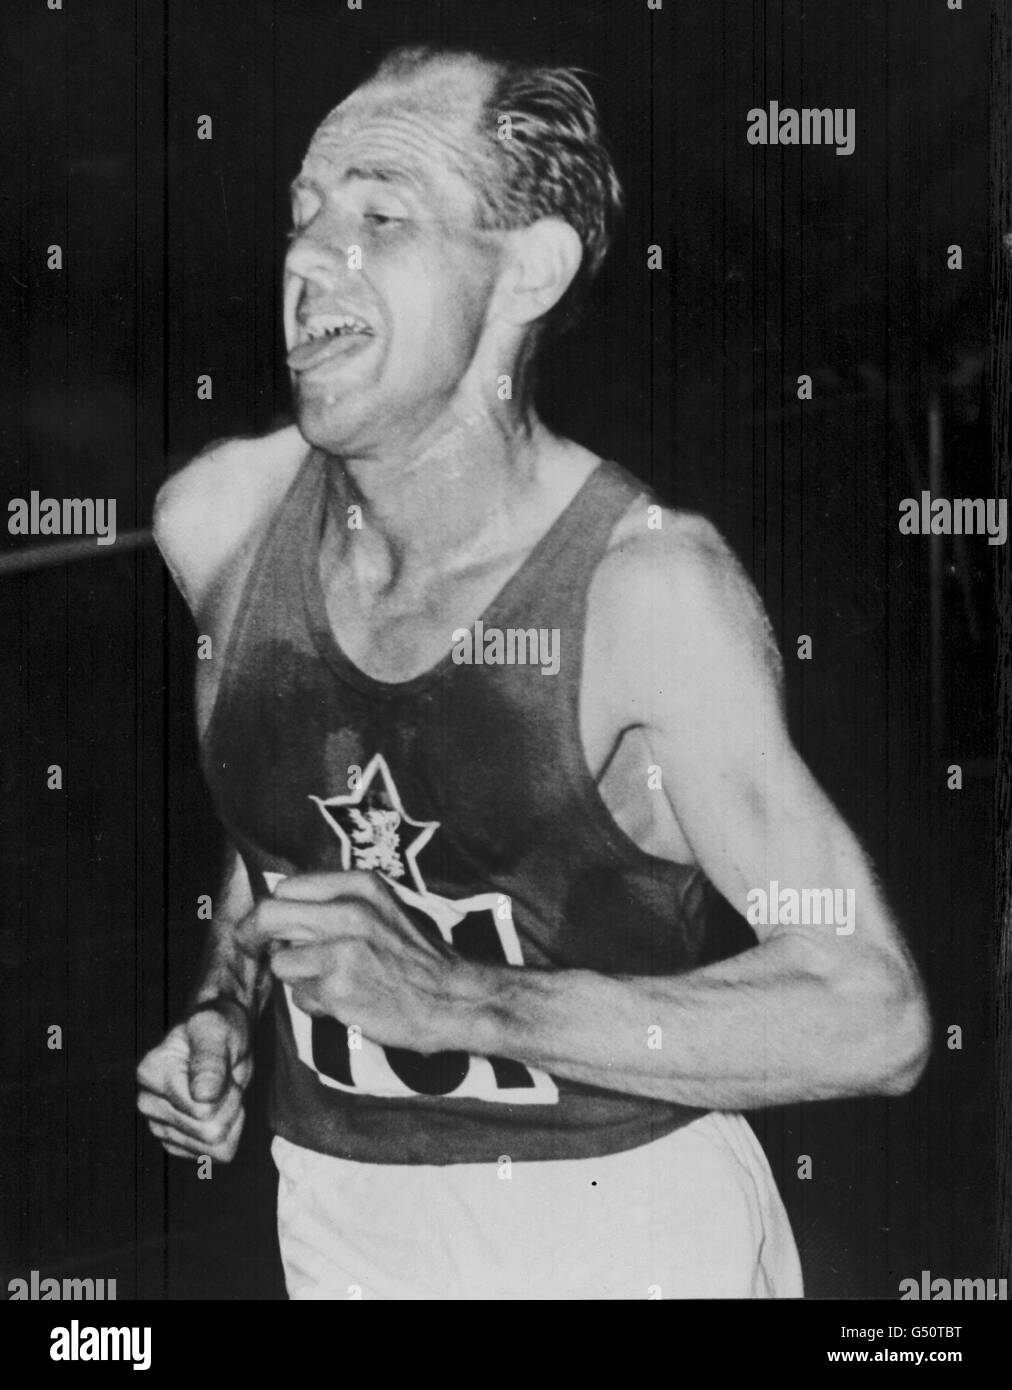 L'atleta ceco Emil Zatopek ha vinto i 10,000 metri dei Campionati europei di Berna, Svizzera 1954. 22/11/00: Zatopek è morto. Morì in un ospedale militare di Praga, nella Repubblica Ceca, all'età di 78 anni, dopo una lunga malattia. * Zatopek divenne quattro volte campione olimpico tra il 1948 e il 1952 e registrò 18 record mondiali. Foto Stock